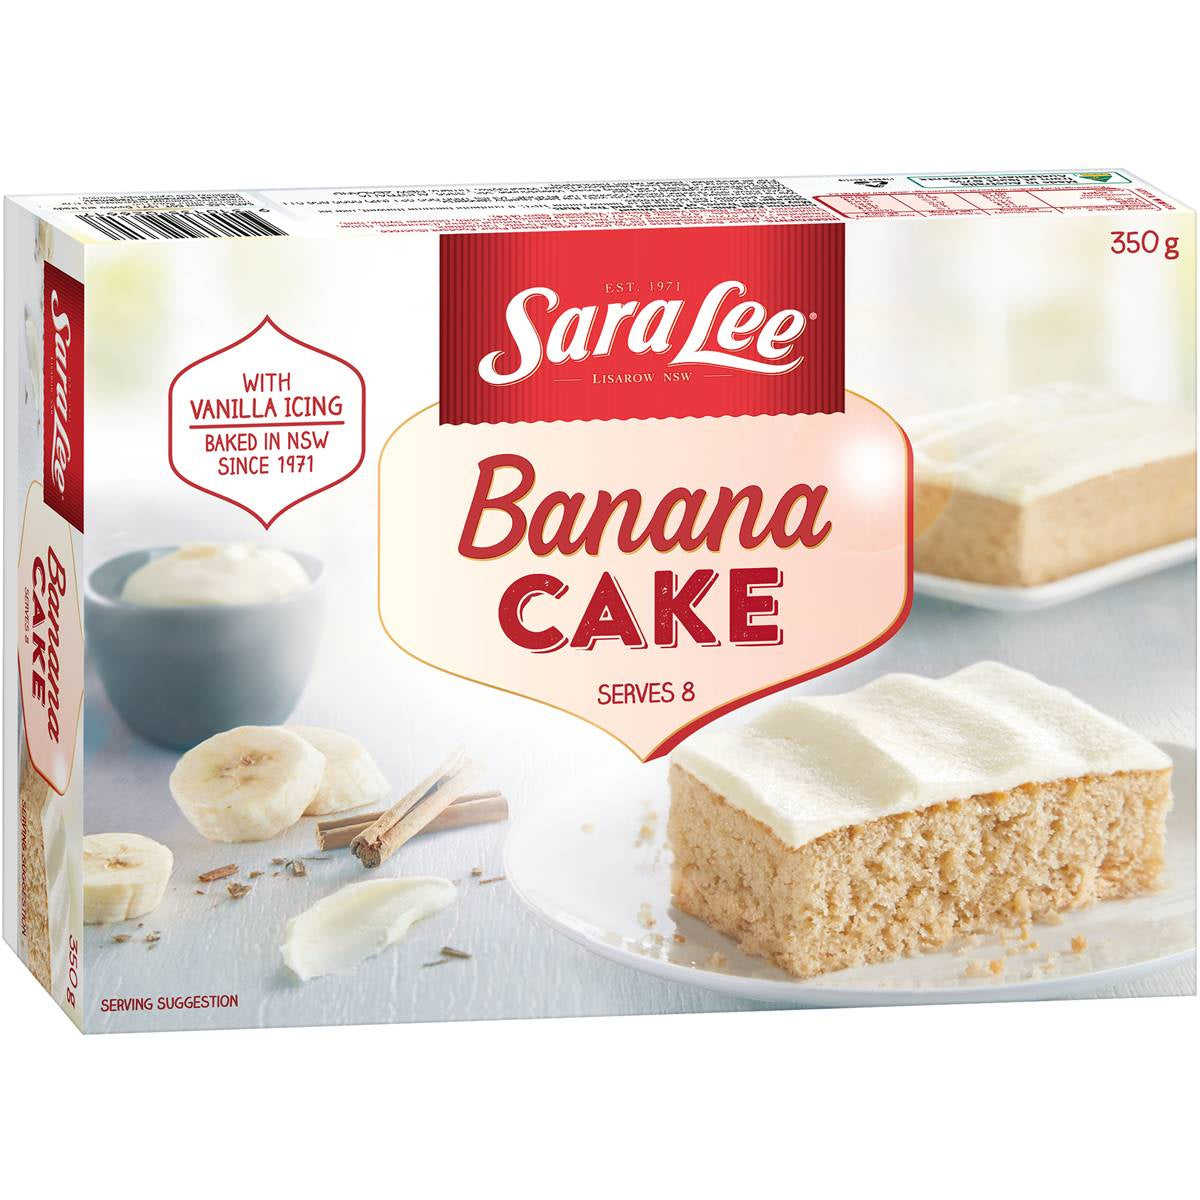 Sara Lee Banana Cake 350g